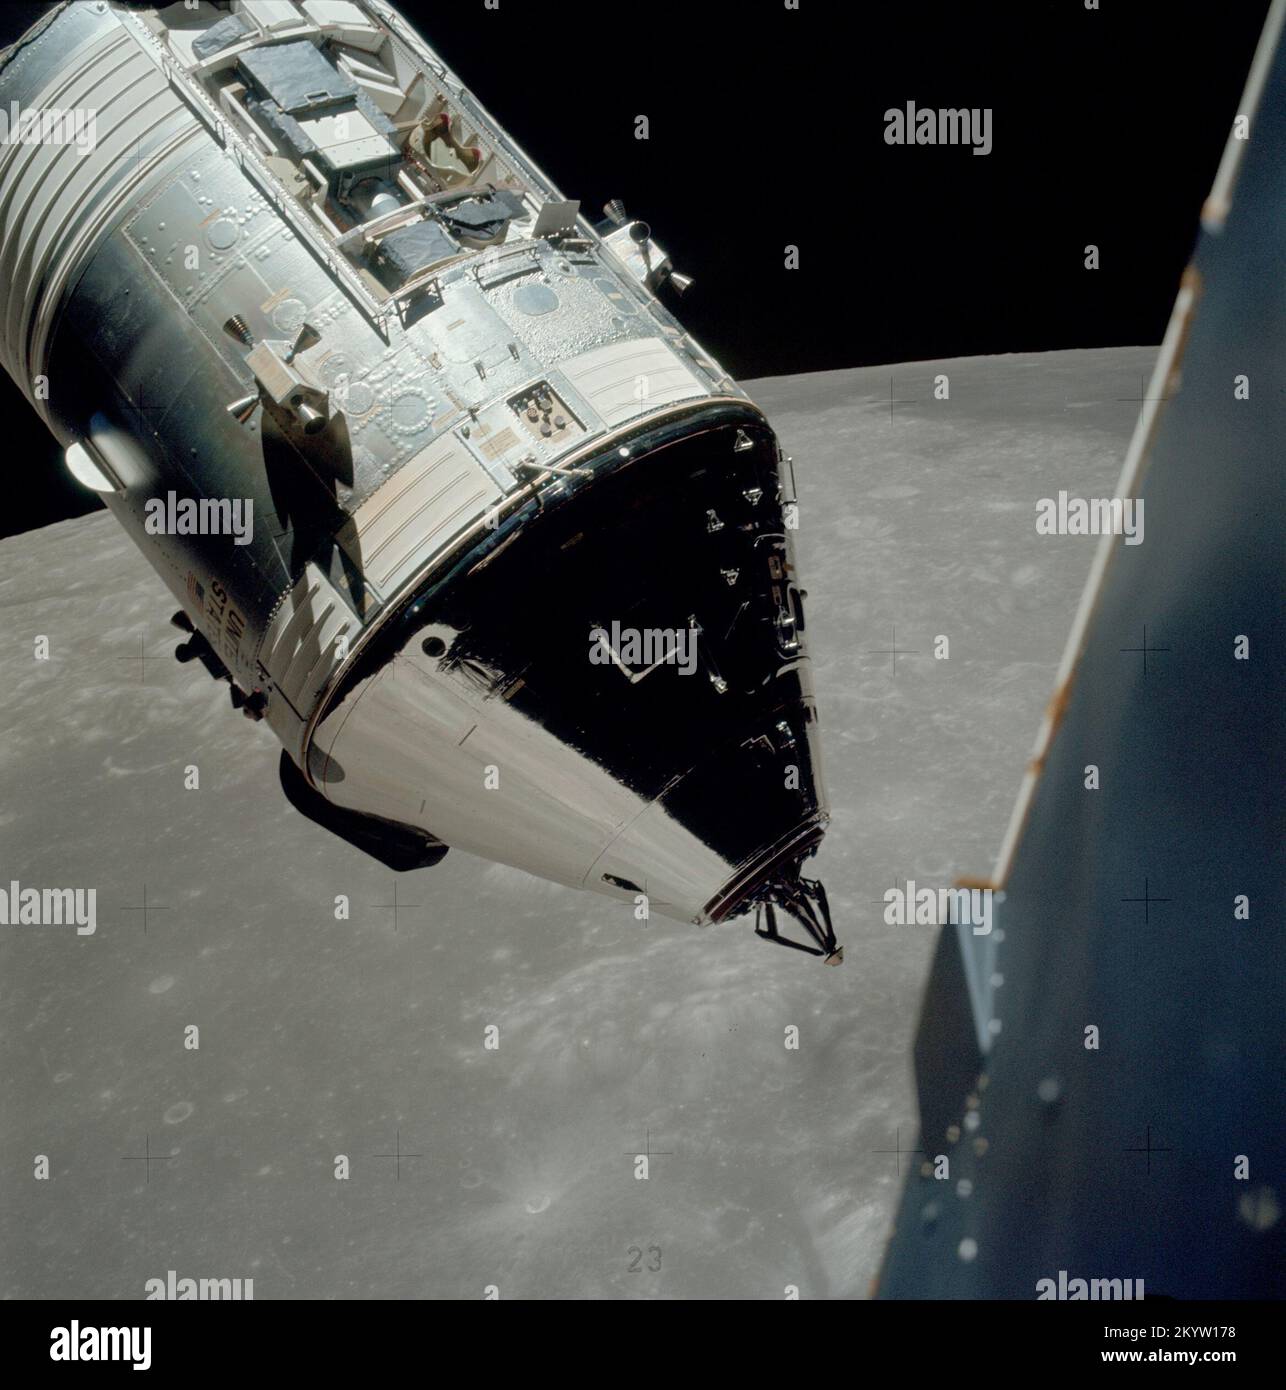 Apollo 17 Command/Service-Module, fotografiert vom LUNAR-Modul in der Umlaufbahn eine ausgezeichnete Ansicht der Apollo 17 Command and Service Modules (CSM), fotografiert vom LUNAR-Modul (LM) „Challenger“ während Rendezvous- und Andockmanövern in der LUNAR-Umlaufbahn. Die LM-Aufstiegsstufe, mit Astronauten Eugene A. Cernan und Harrison H. Schmitt an Bord, war gerade vom Taurus-Littrow-Landeplatz auf der Mondoberfläche zurückgekehrt. Astronaut Ronald E. Evans blieb beim CSM in der Mondumlaufbahn. Beachten Sie den SIM-Schacht (Exposed Scientific Instrument Module) in Sektor 1 des Servicemoduls (SM). 14. Dezember 1972 Stockfoto